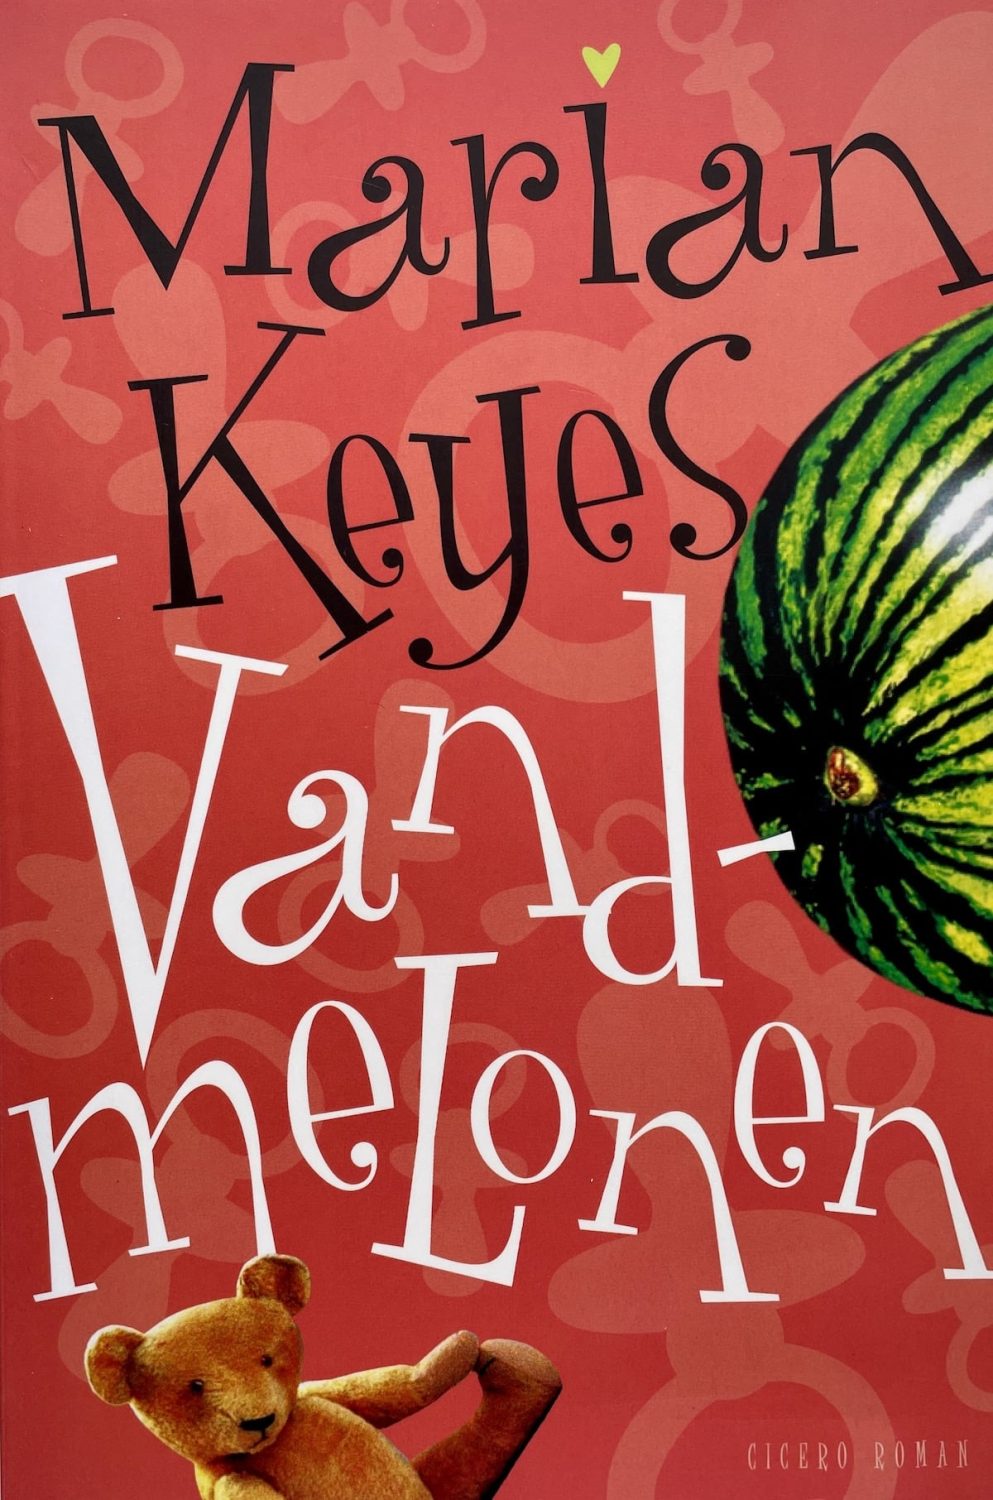 Vandmelonen, Marian Keyes, brugt bog